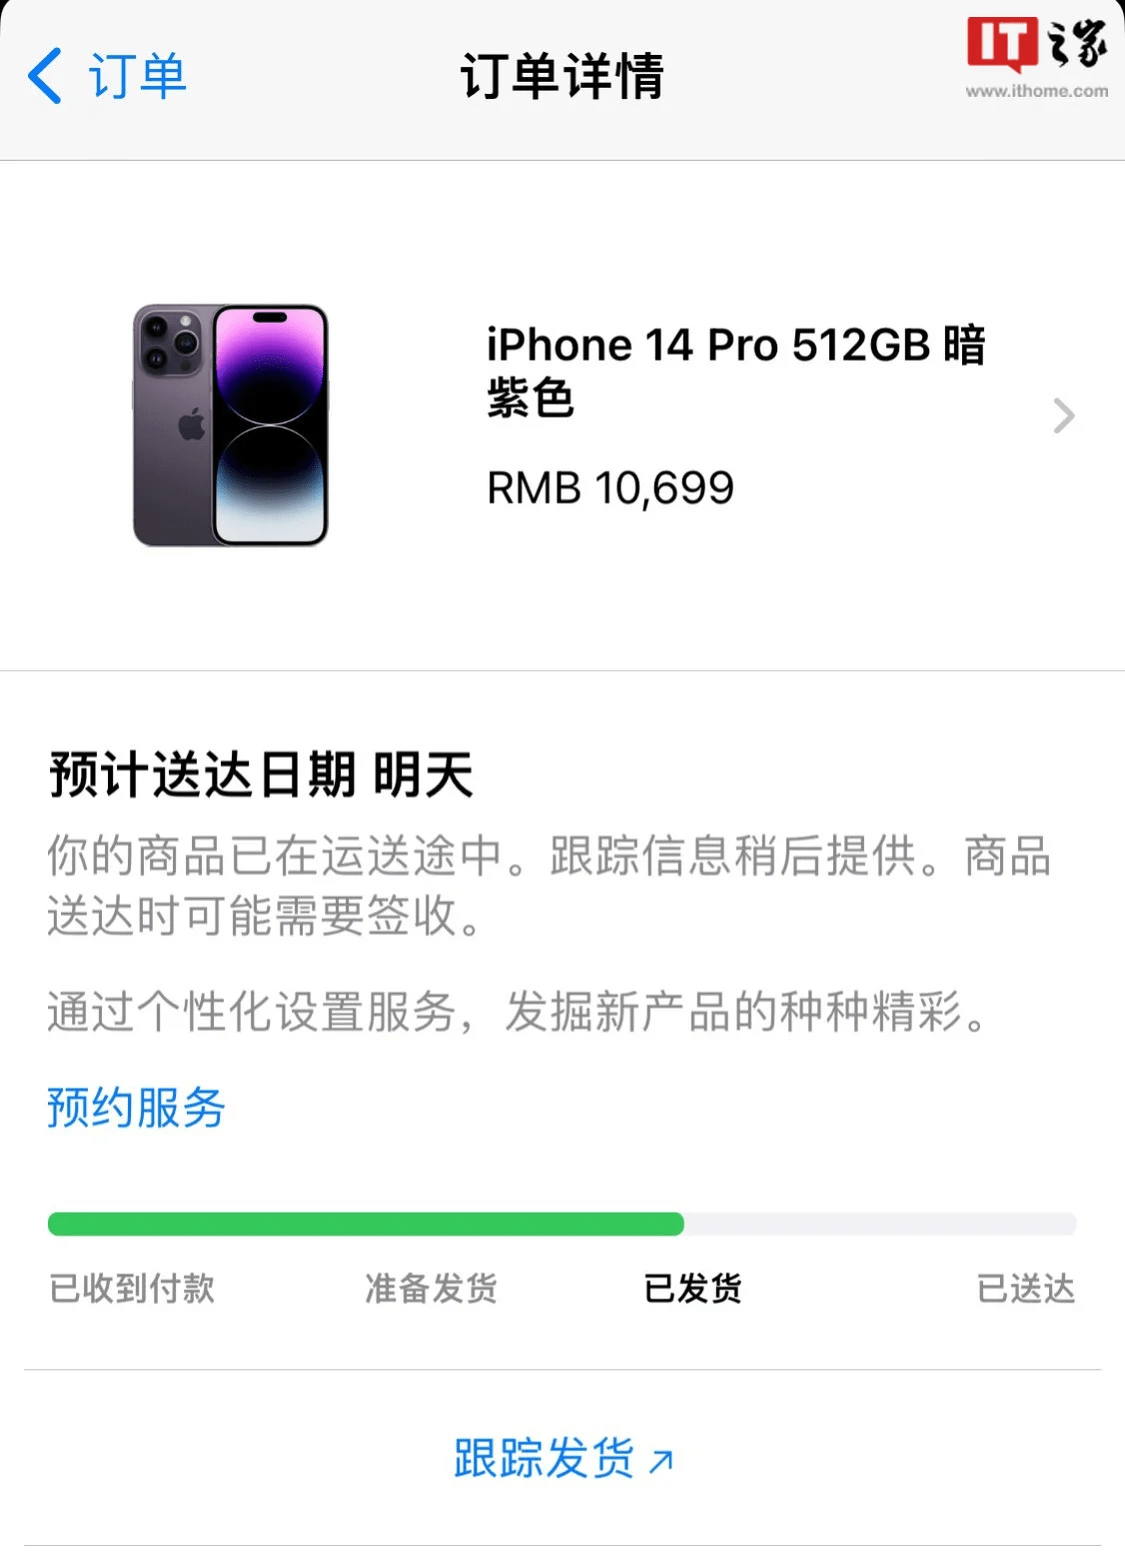 苹果iPhone 14/14 Pro/14 Pro Max国内首批订单已发货